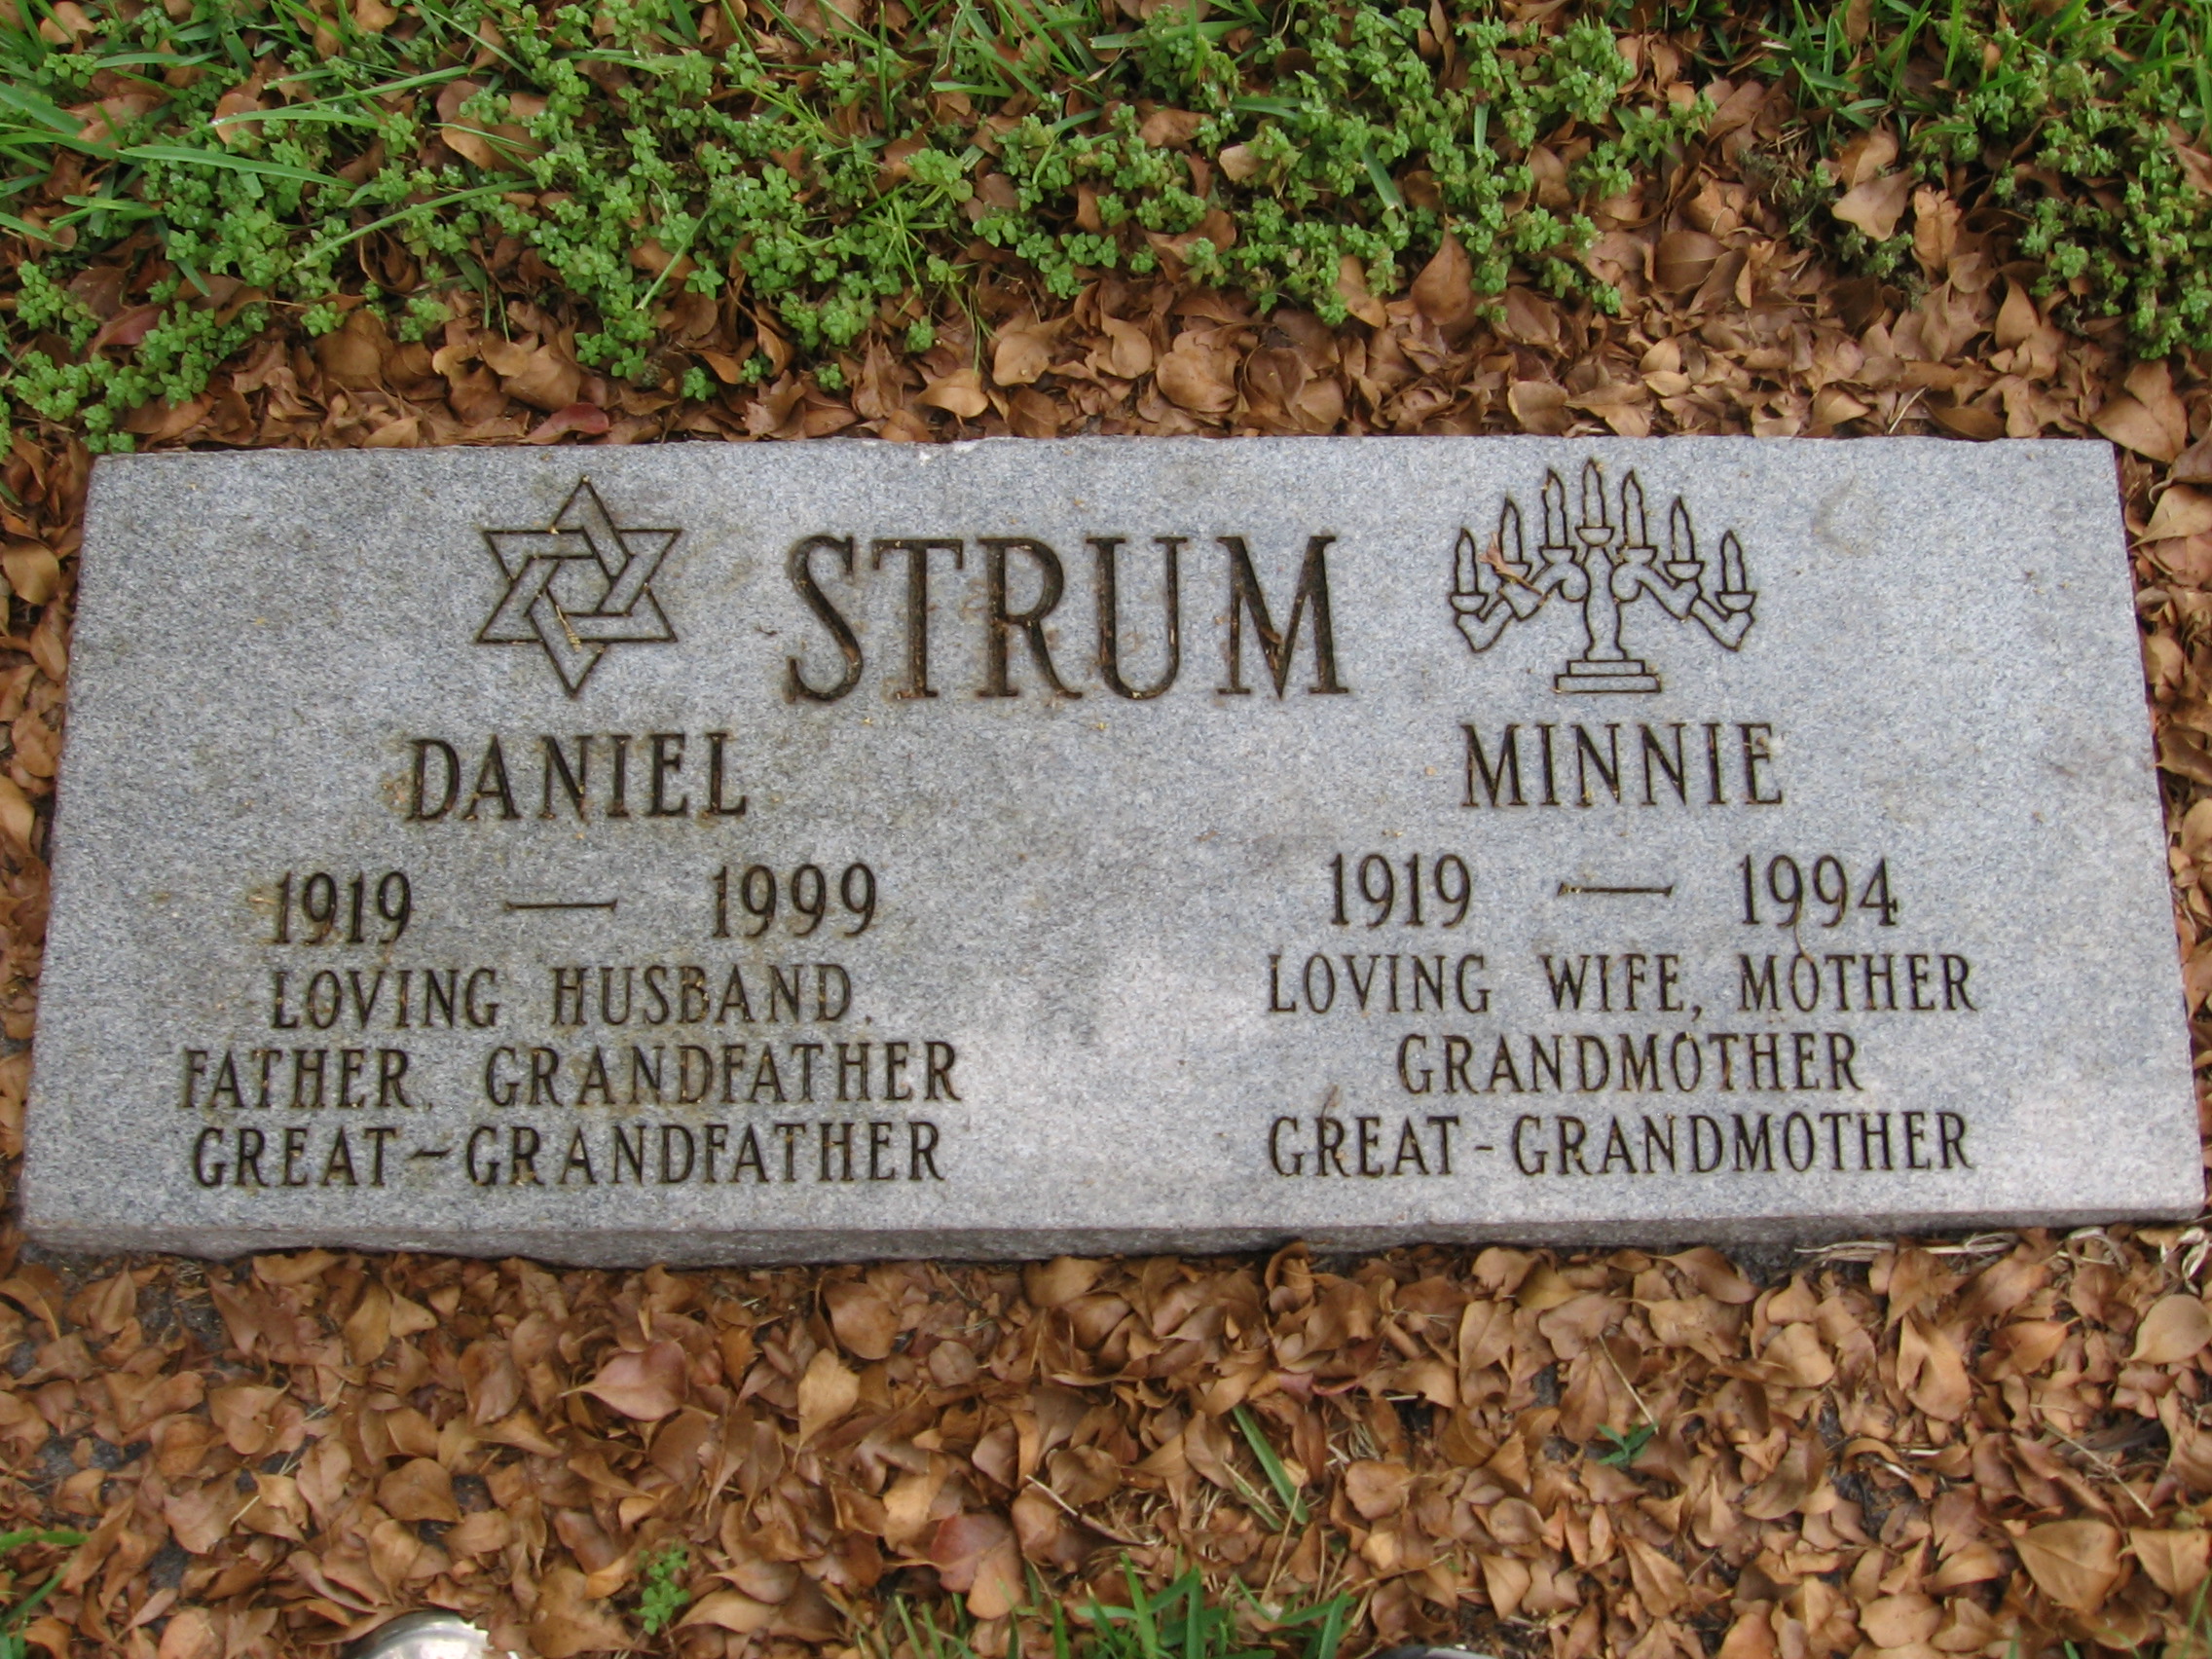 Daniel Strum